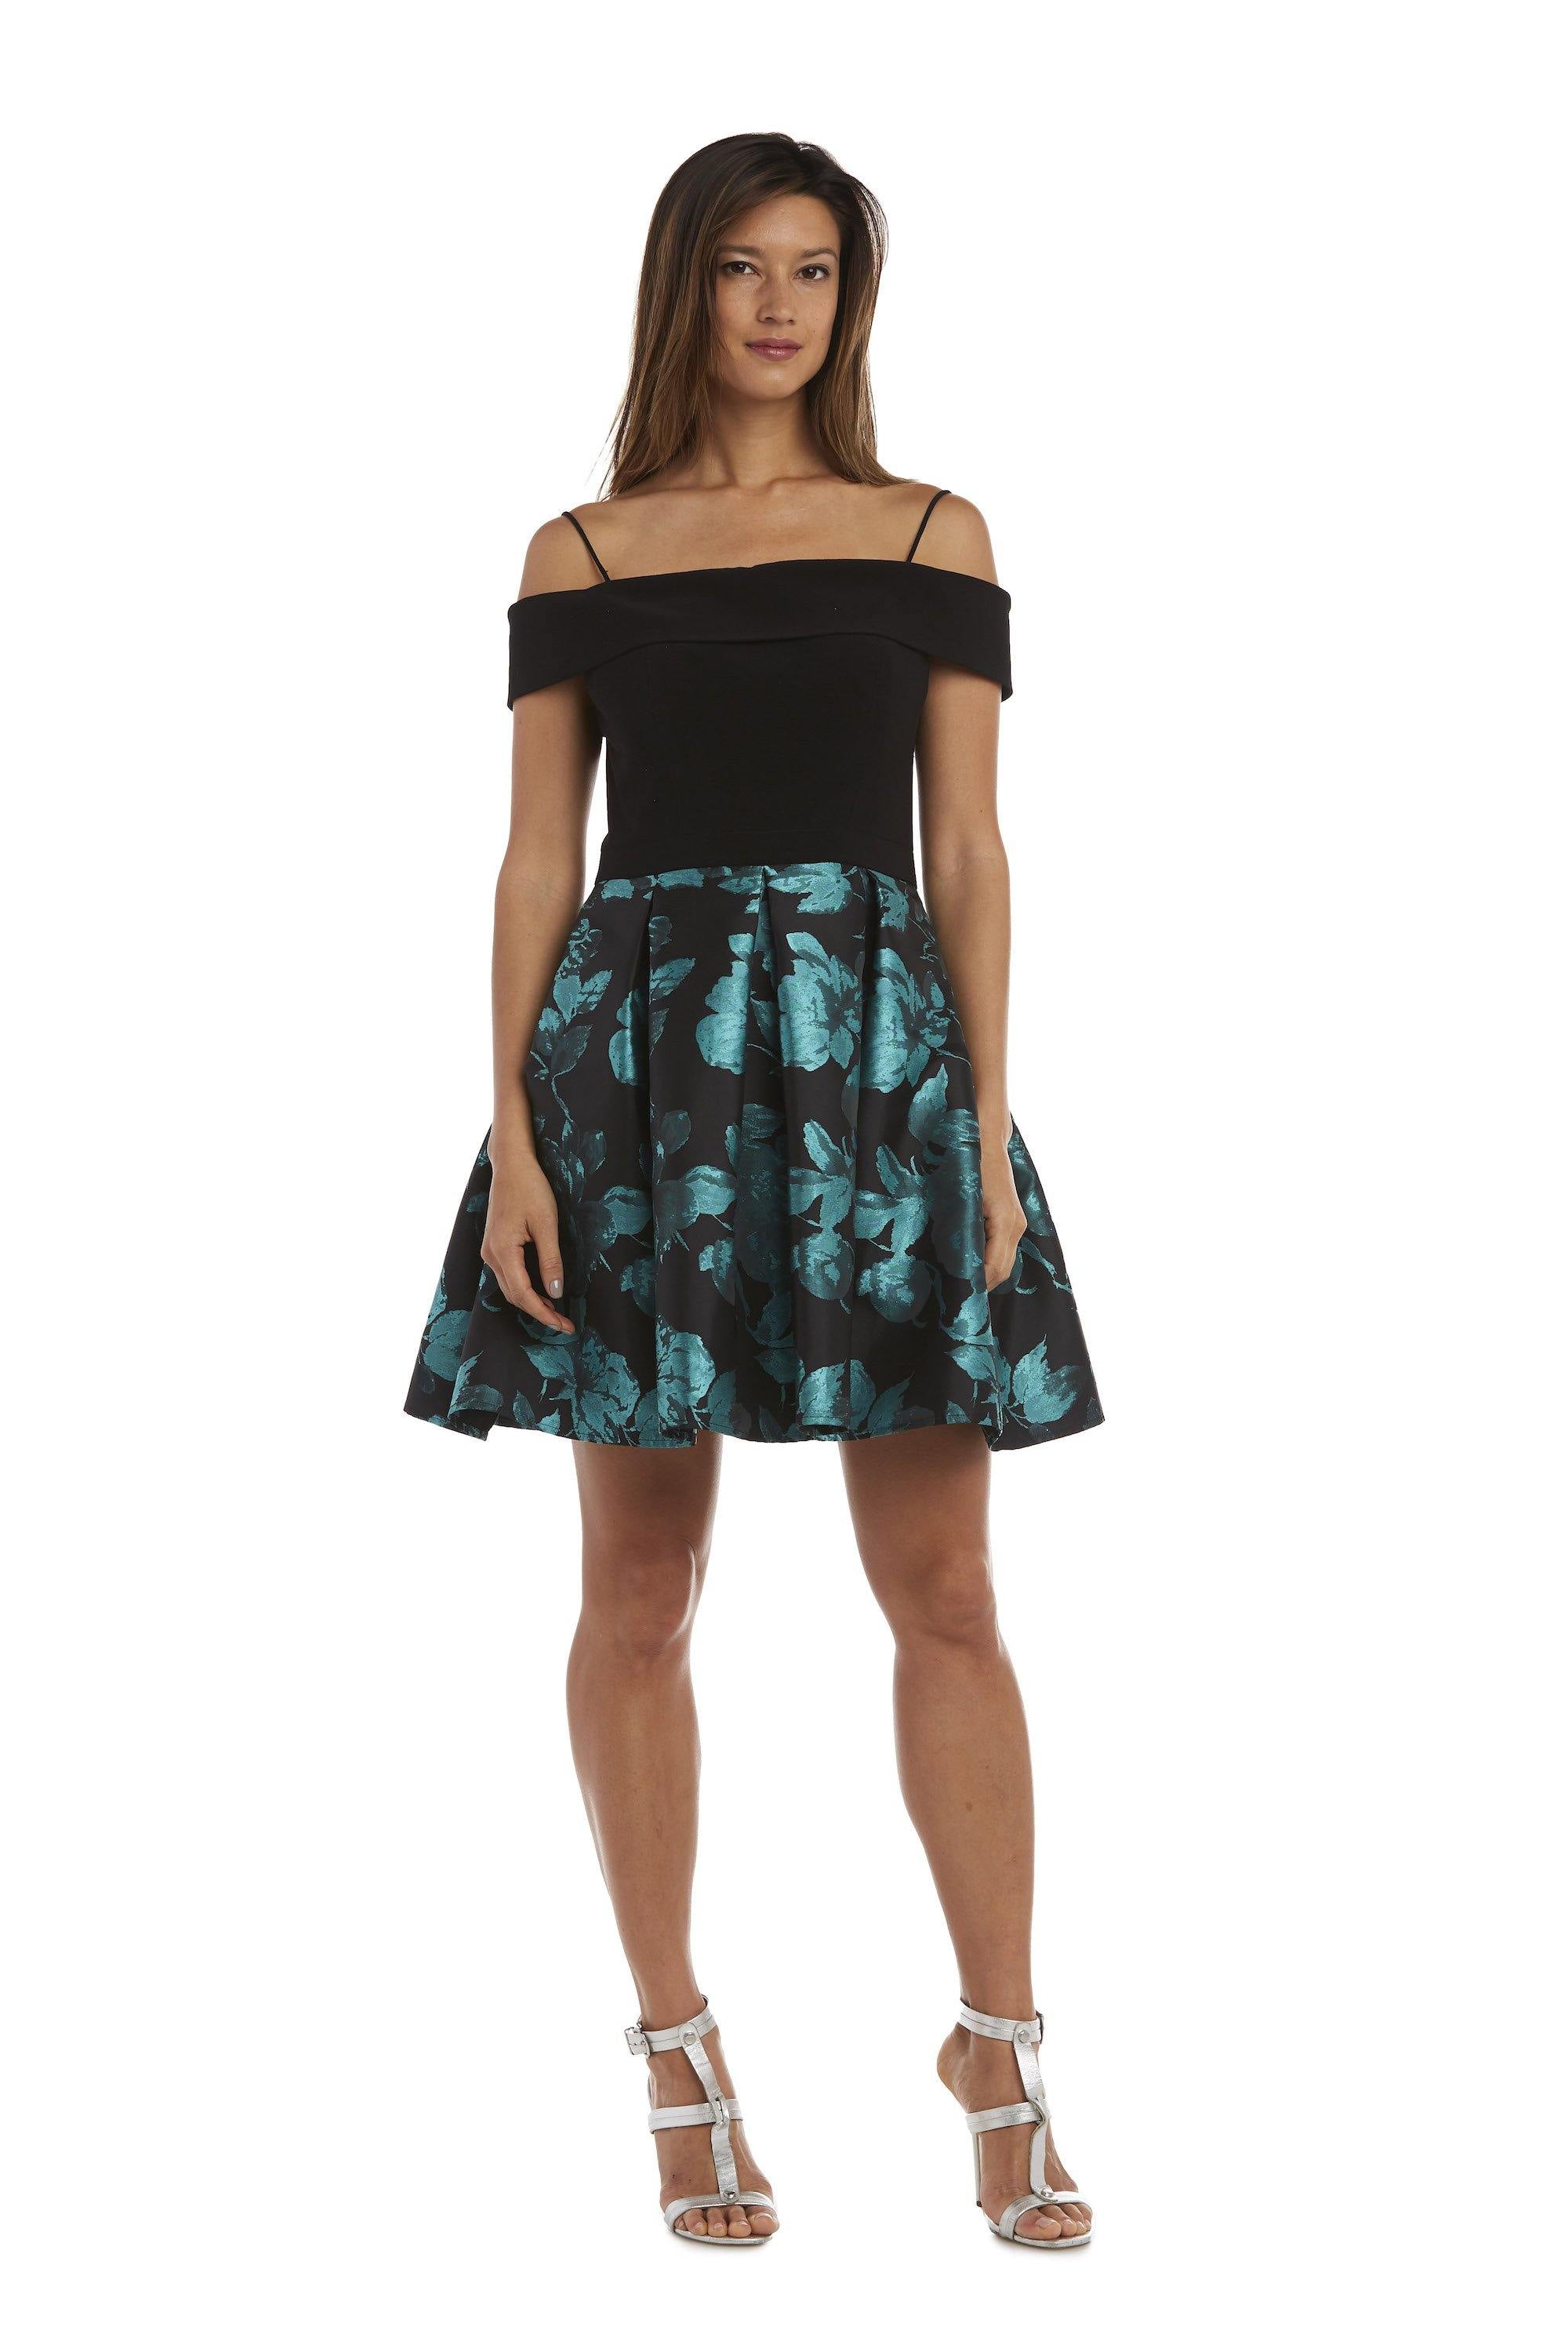 Morgan & Co Off Shoulder Short Dress 12554 - The Dress Outlet